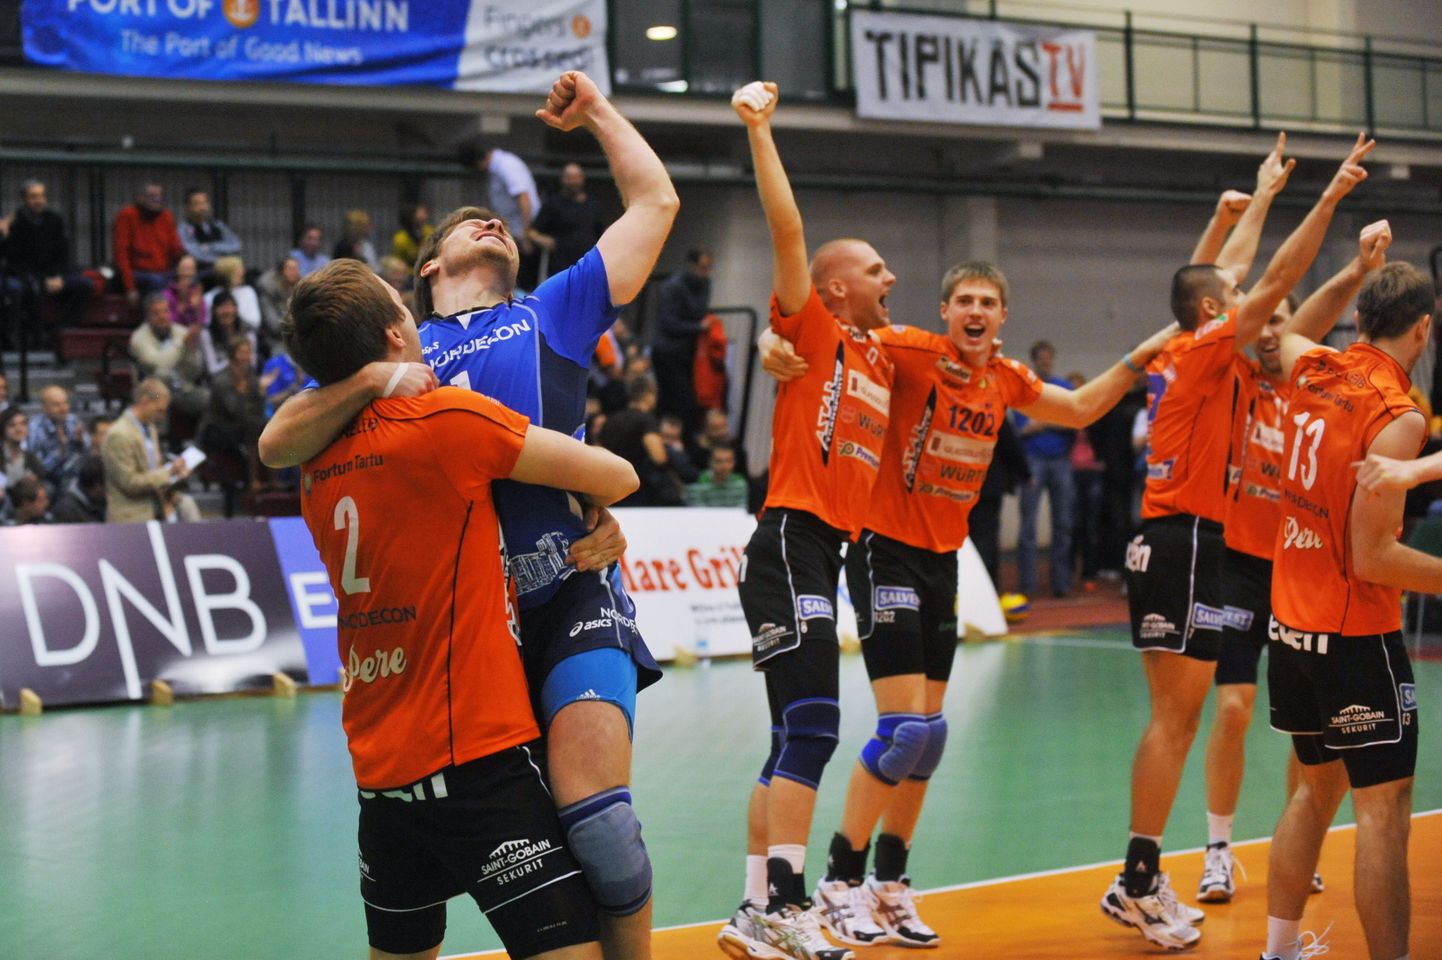 Ühisliiga võitja Tartu Pere Leib asub poolfinaalis püüdma võitu Pärnu VK üle.